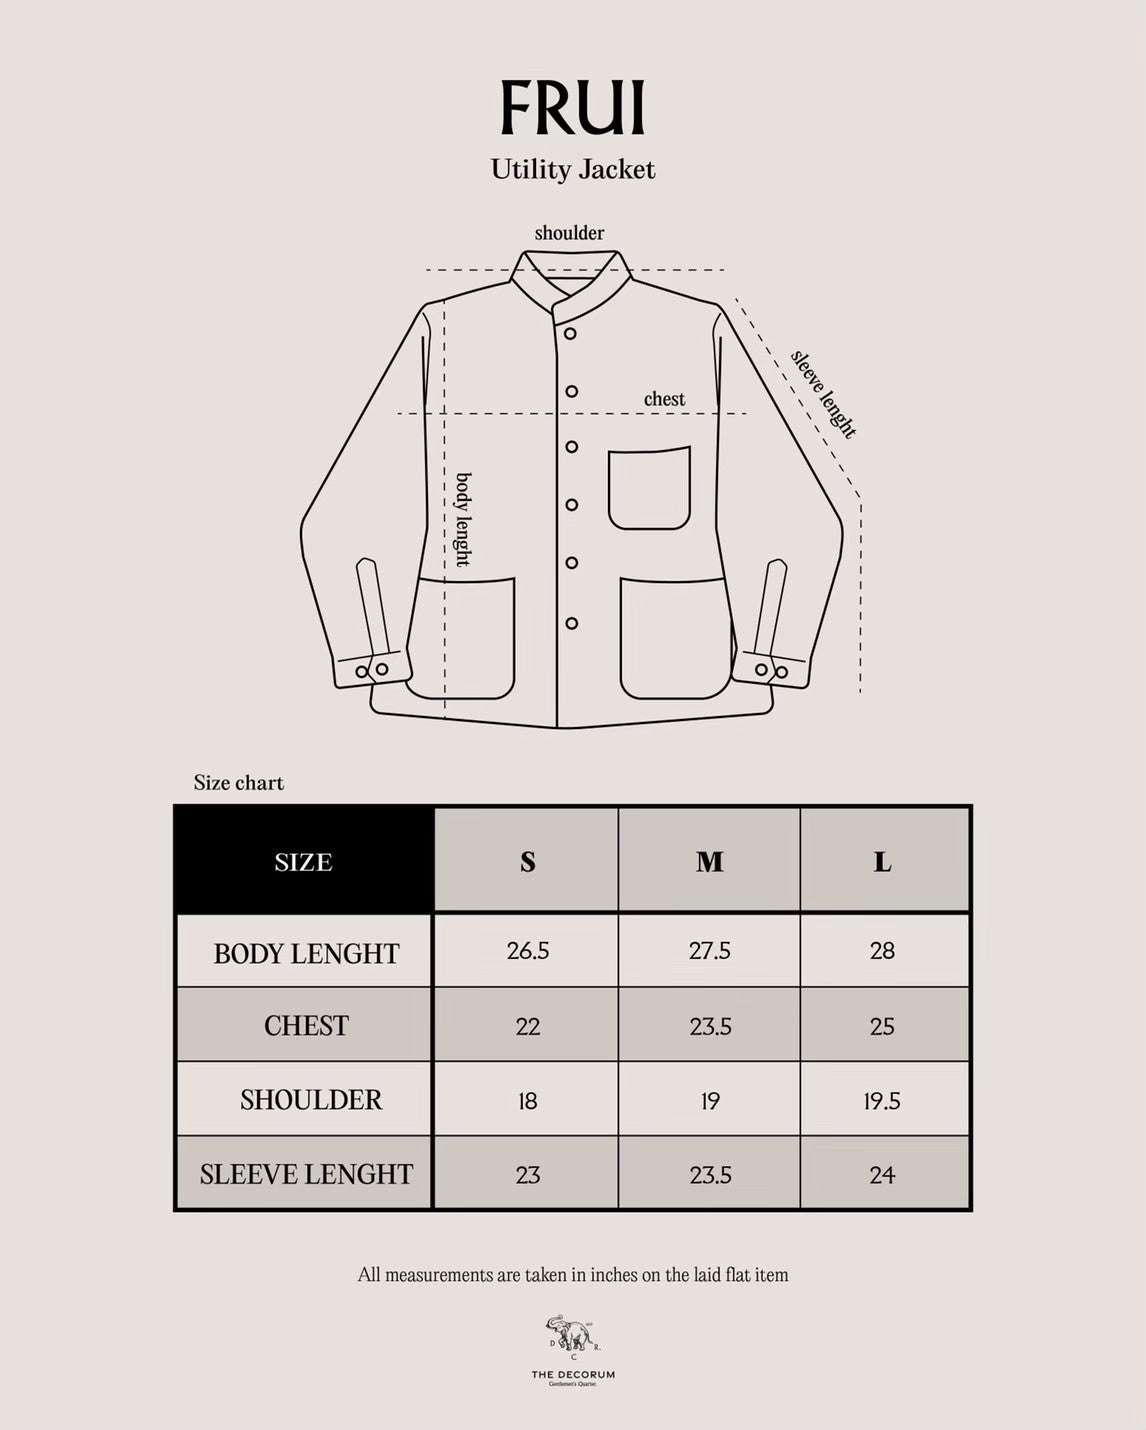 Frui White Utility Jacket